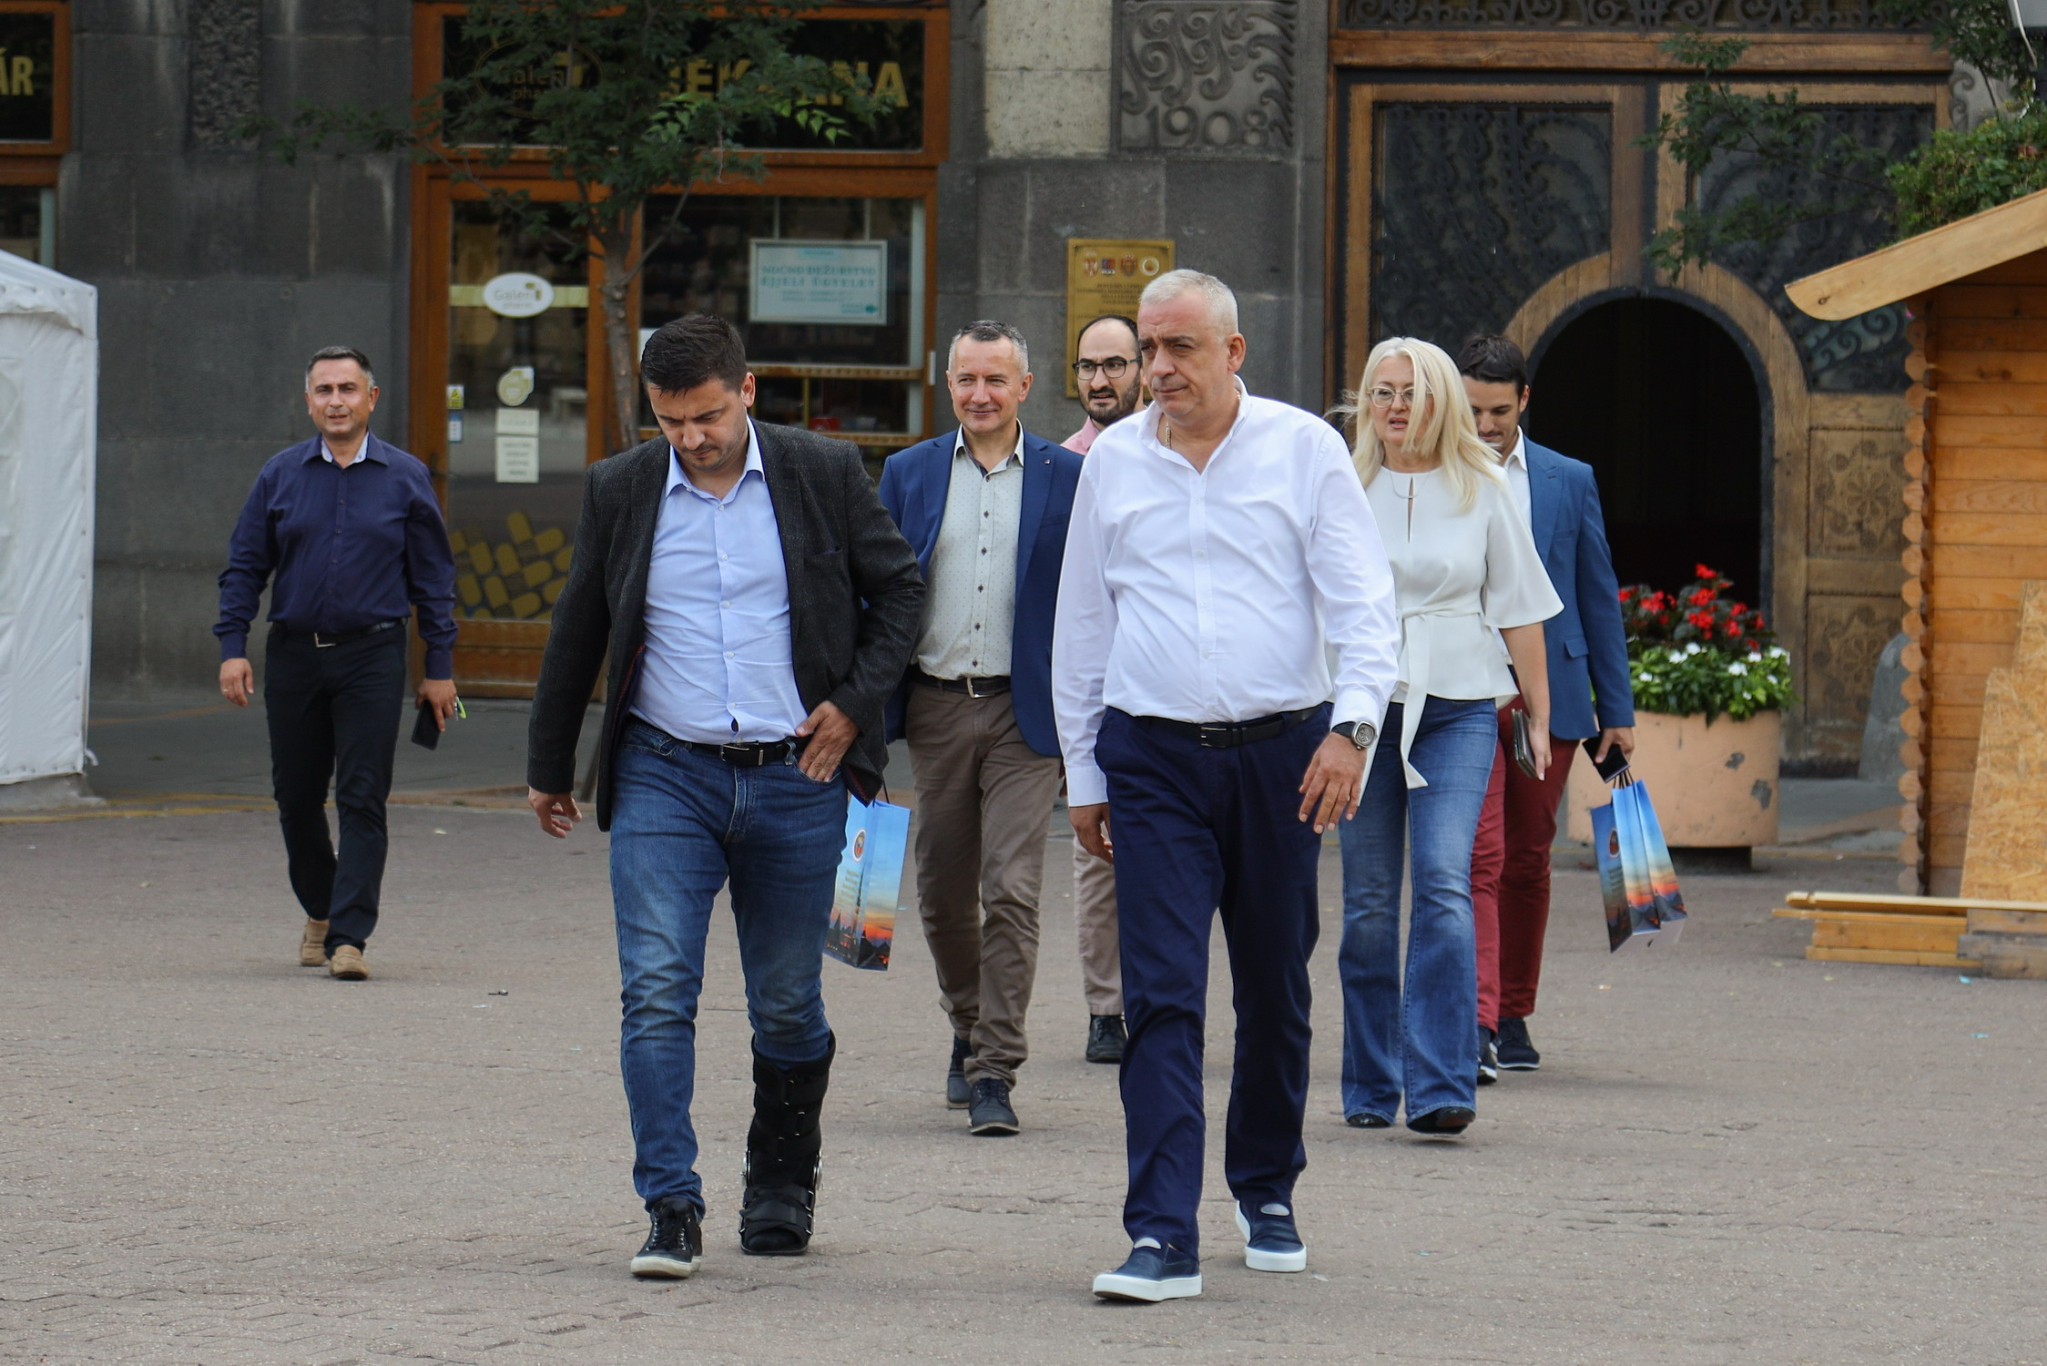 BEZBEDNOST SAOBRAĆAJA Gradonačelnik Stevan Bakić prisustvovao promociji na subotičkom centralnom gradskom trgu (FOTO)